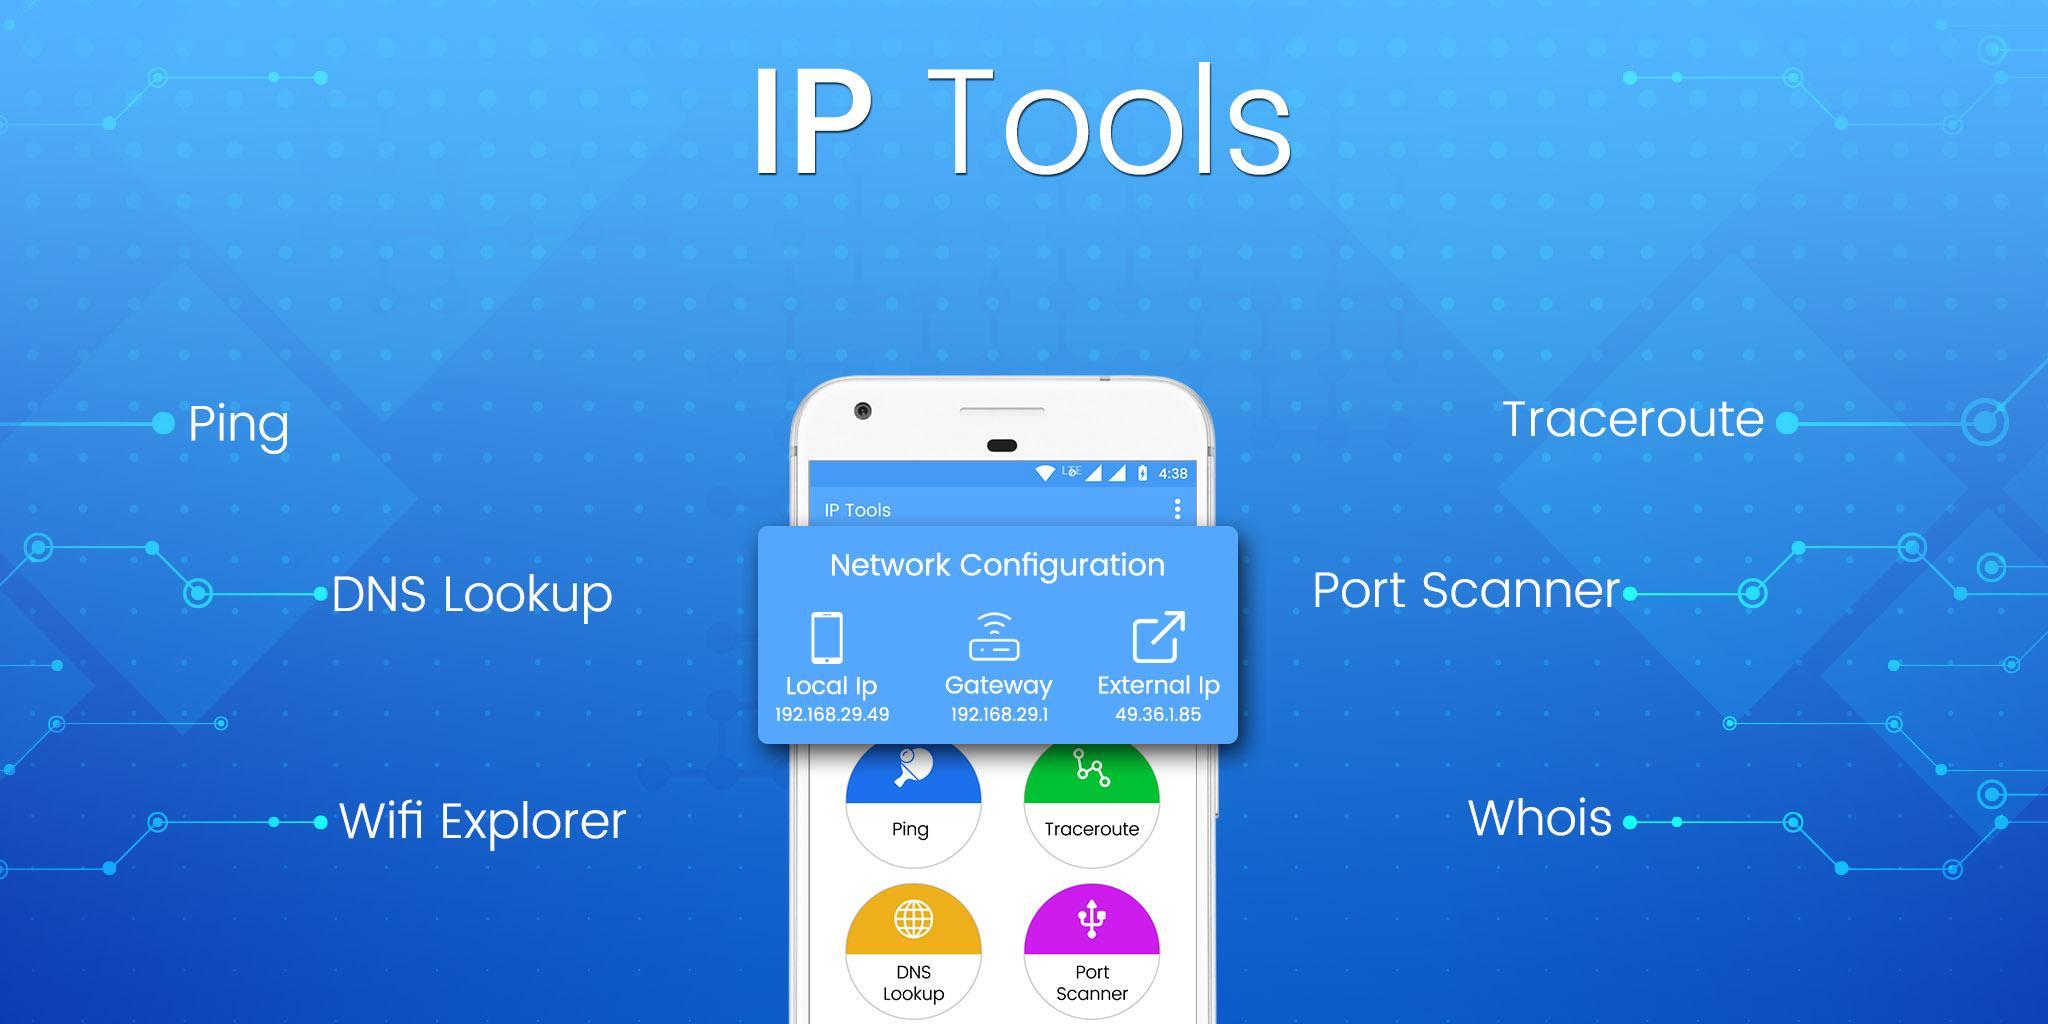 Ping tools. IP Tools APK. Ping Tools APK. The Tools. Iptool.